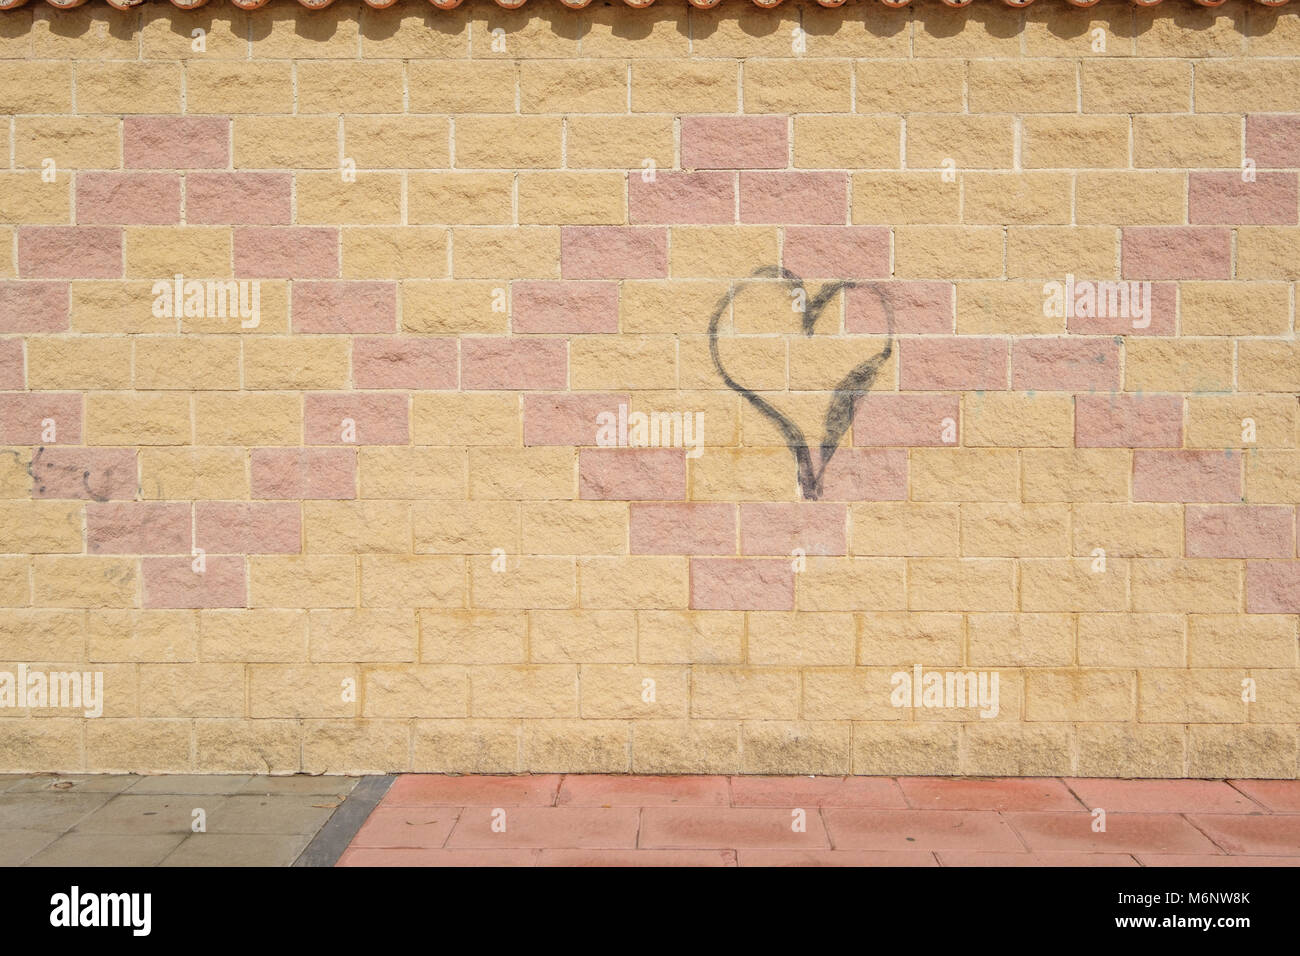 Graffiti heart on a wall. Stock Photo